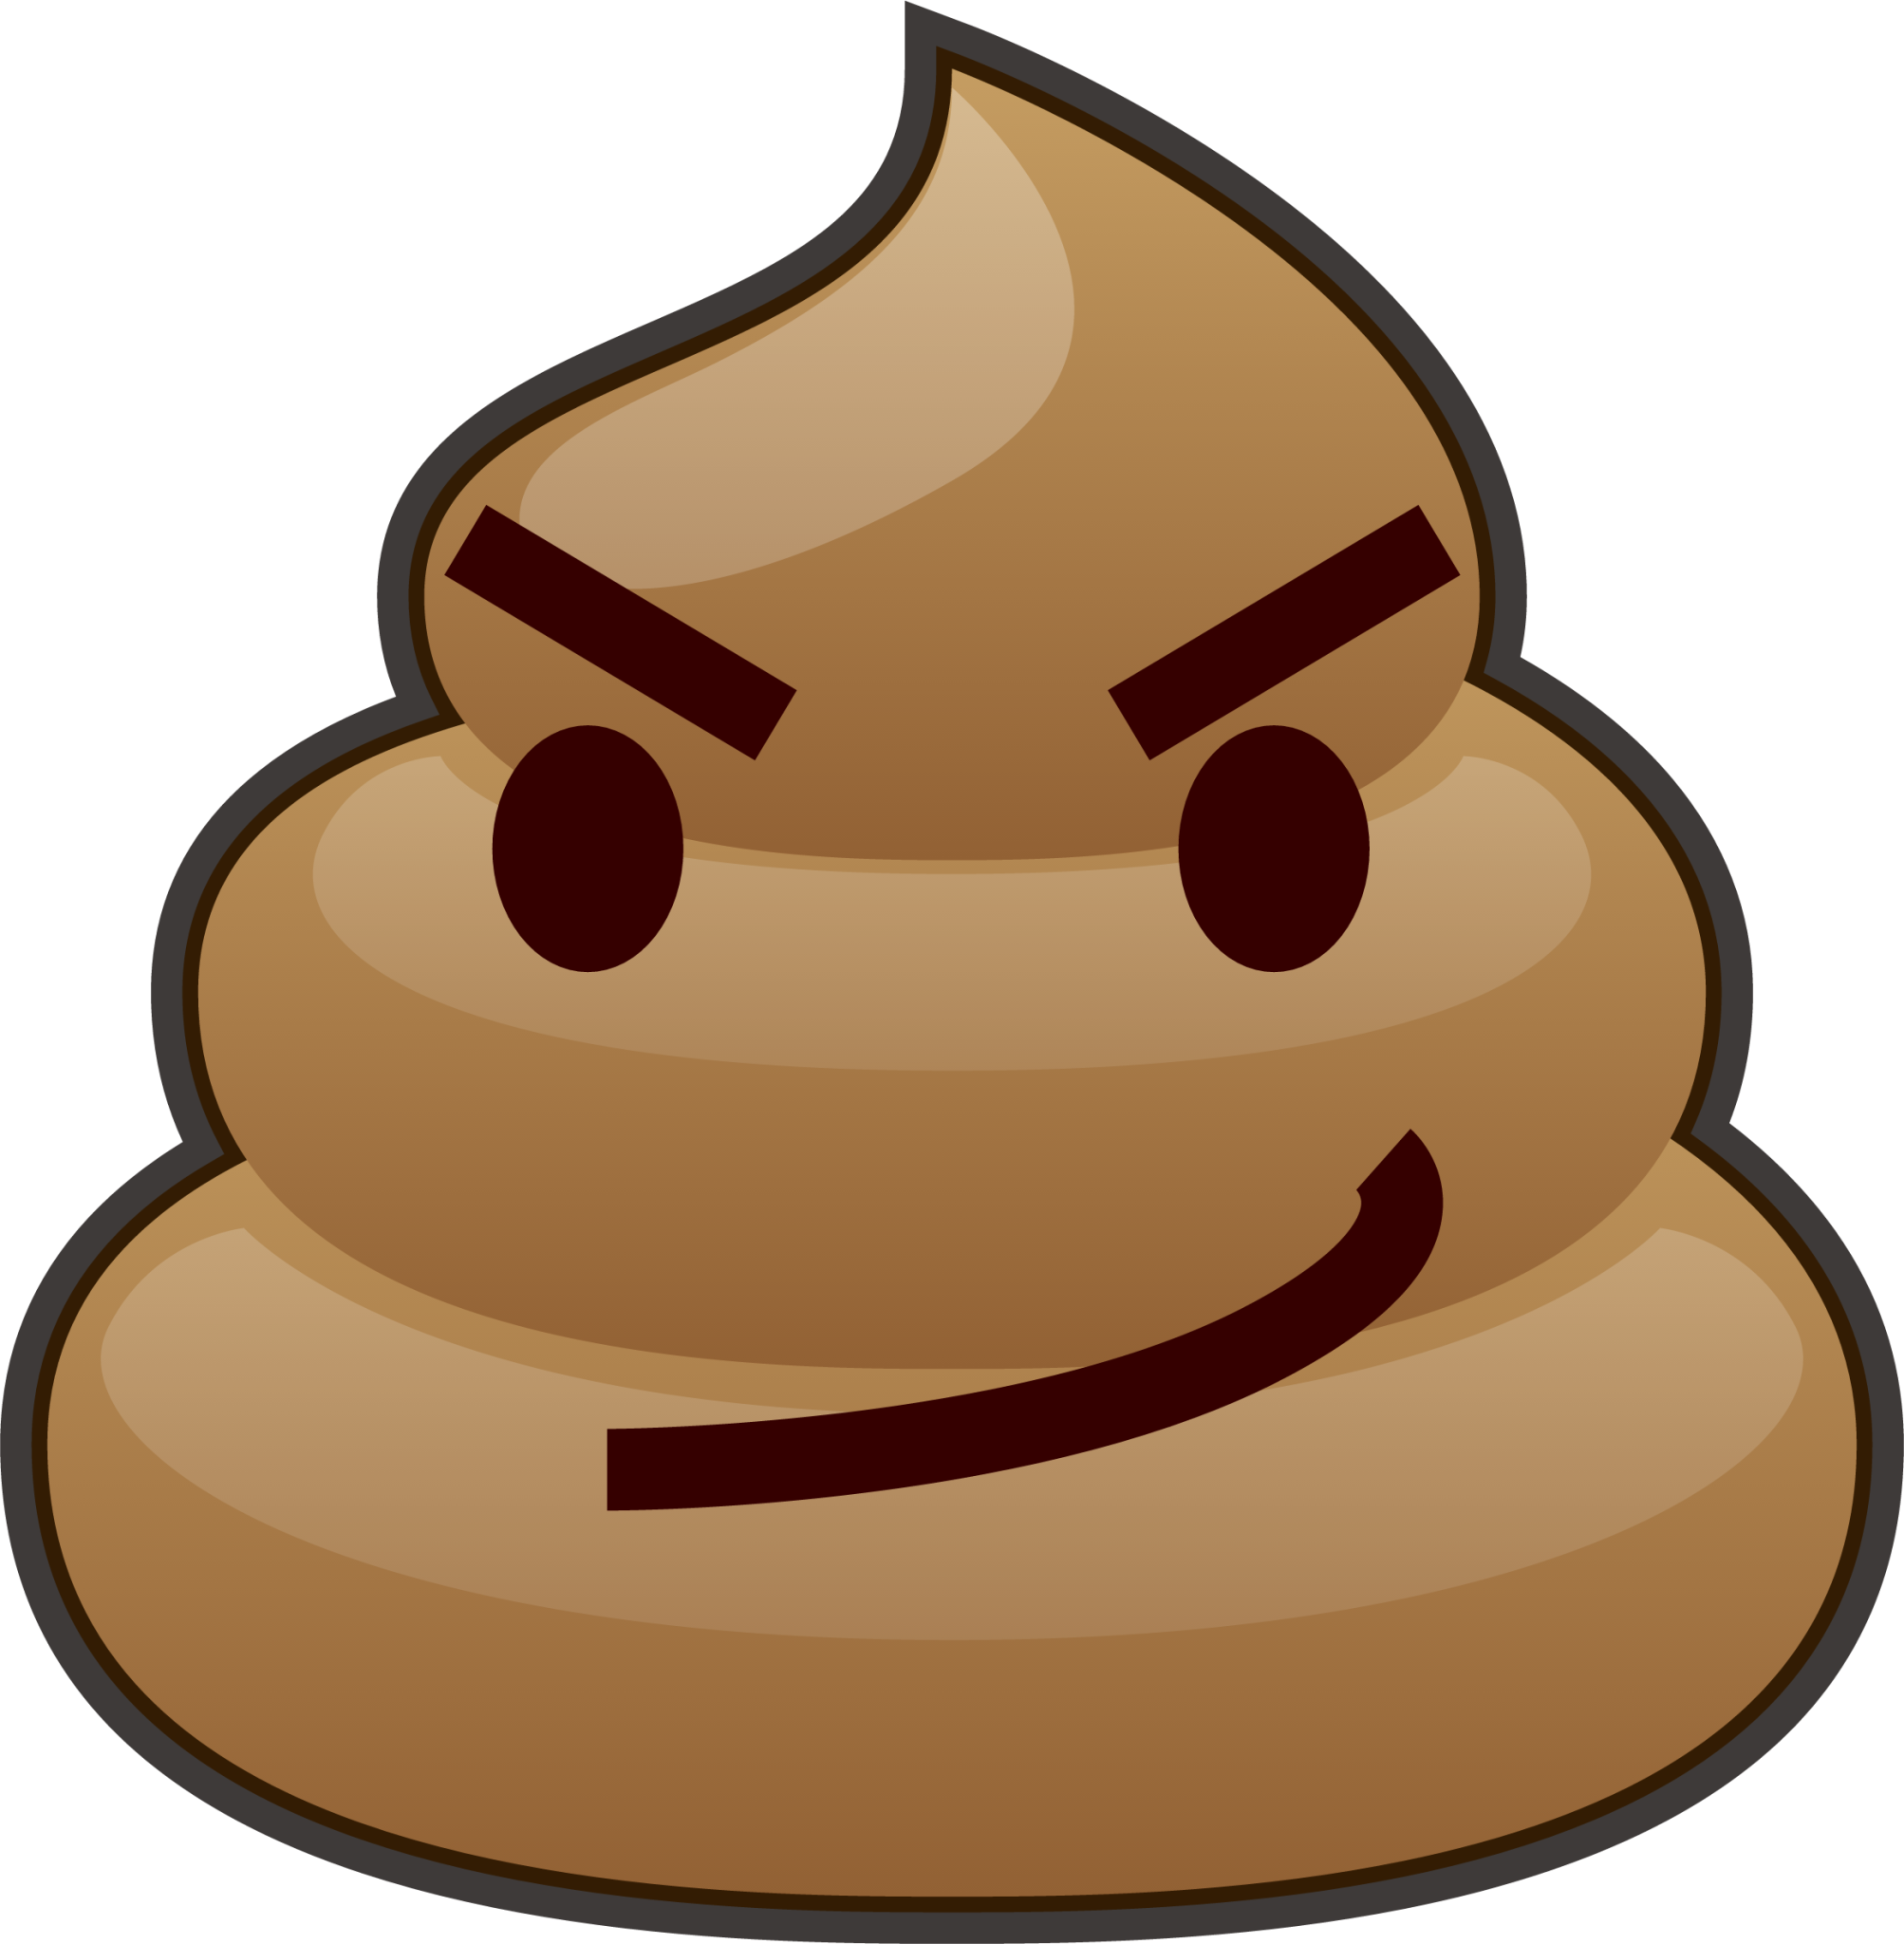 triumph (poop) emoji